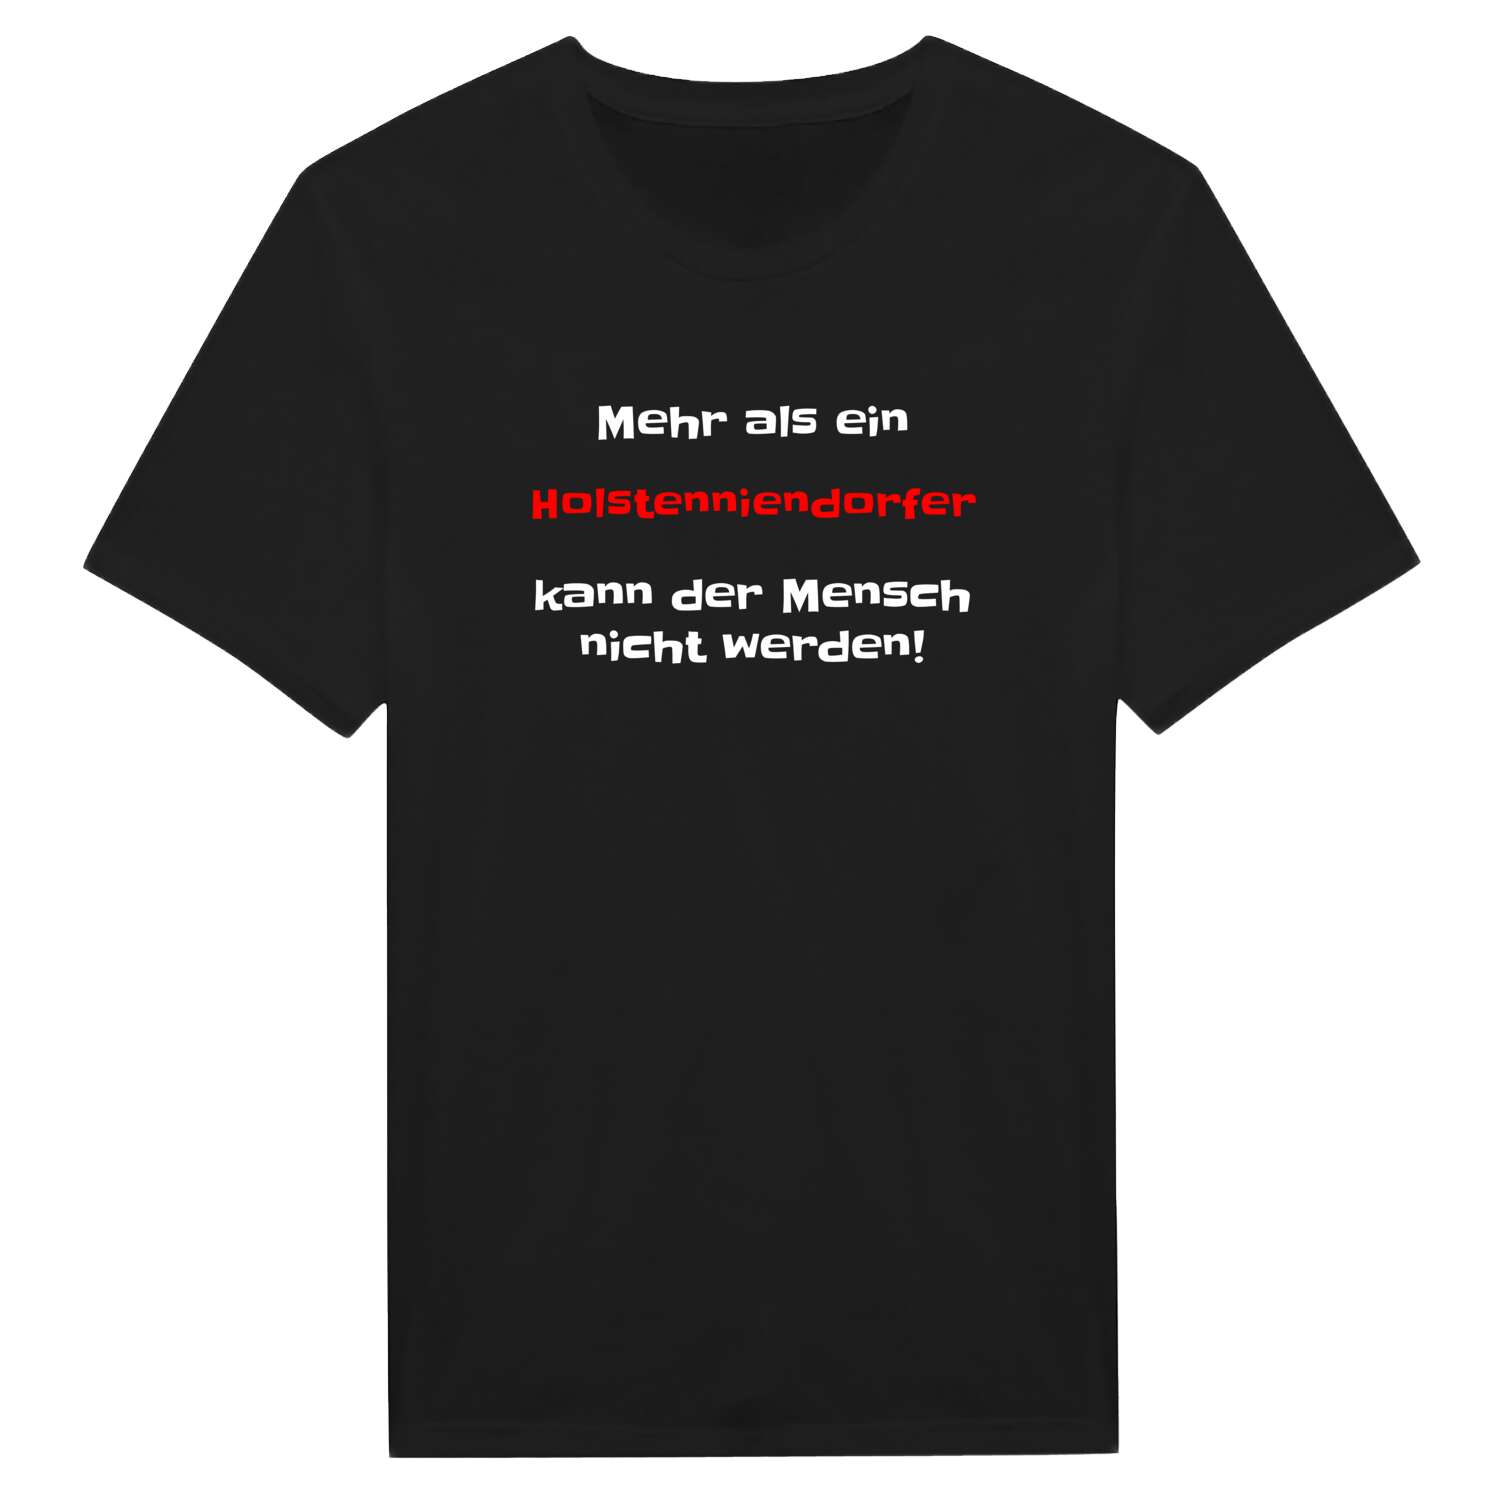 Holstenniendorf T-Shirt »Mehr als ein«